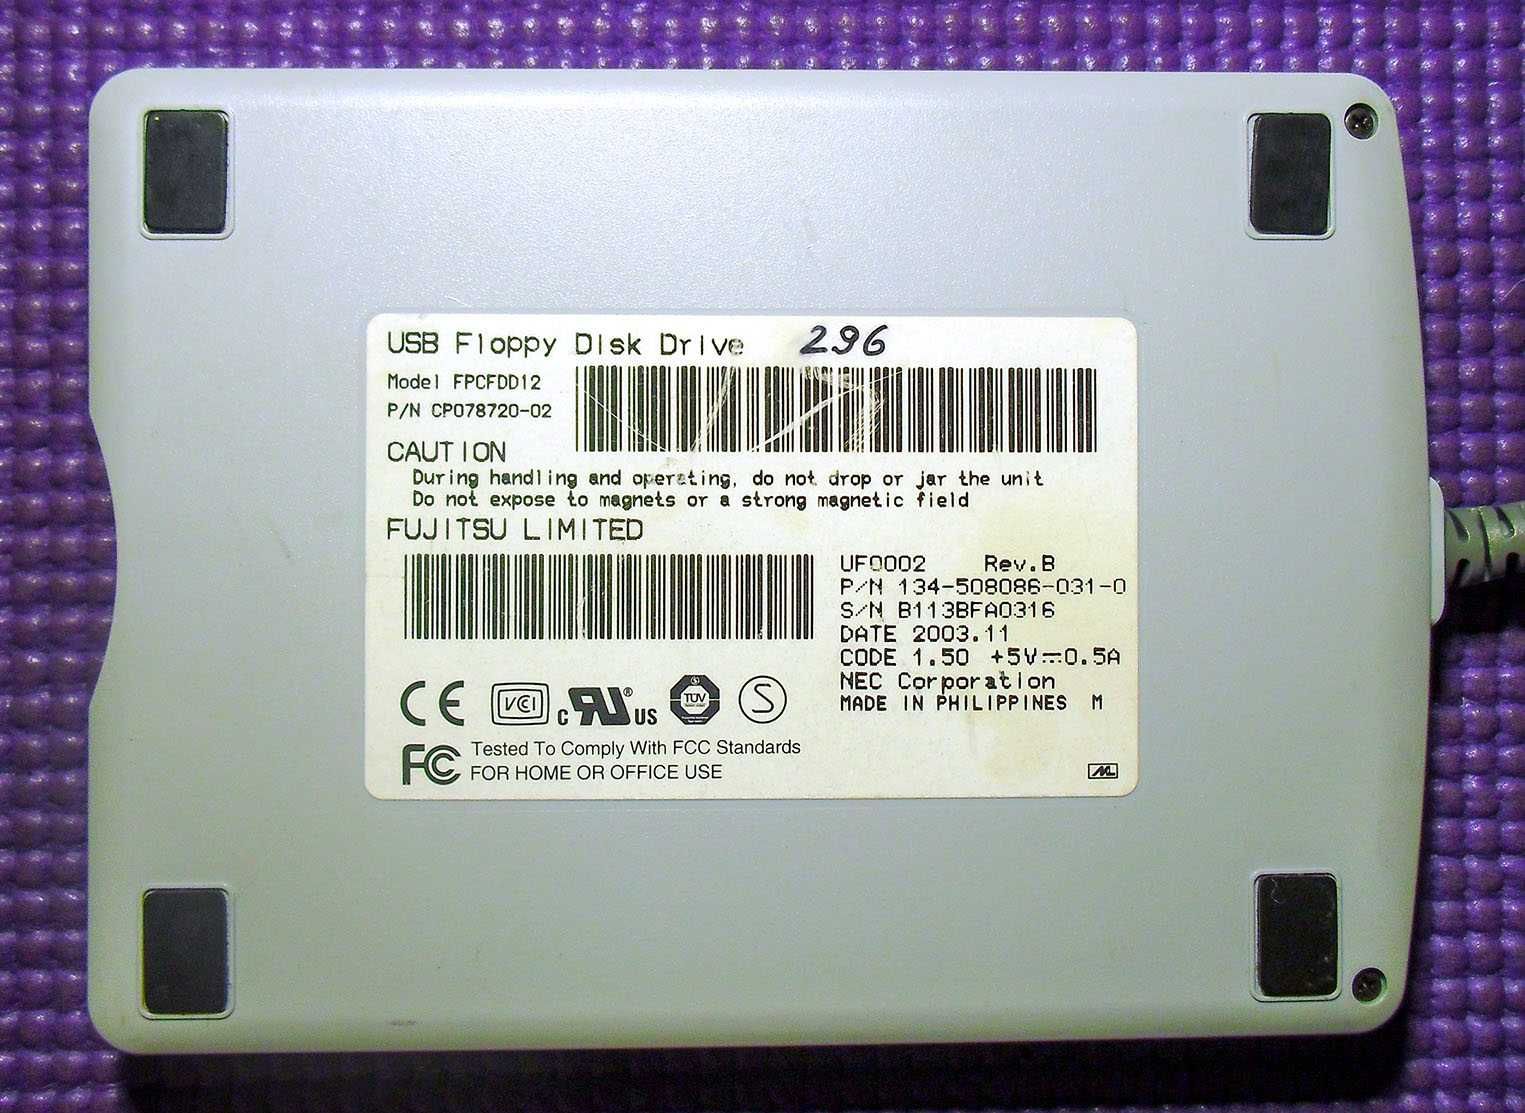 Флоппи дисковод USB внешний FDD 3.5 дюйма